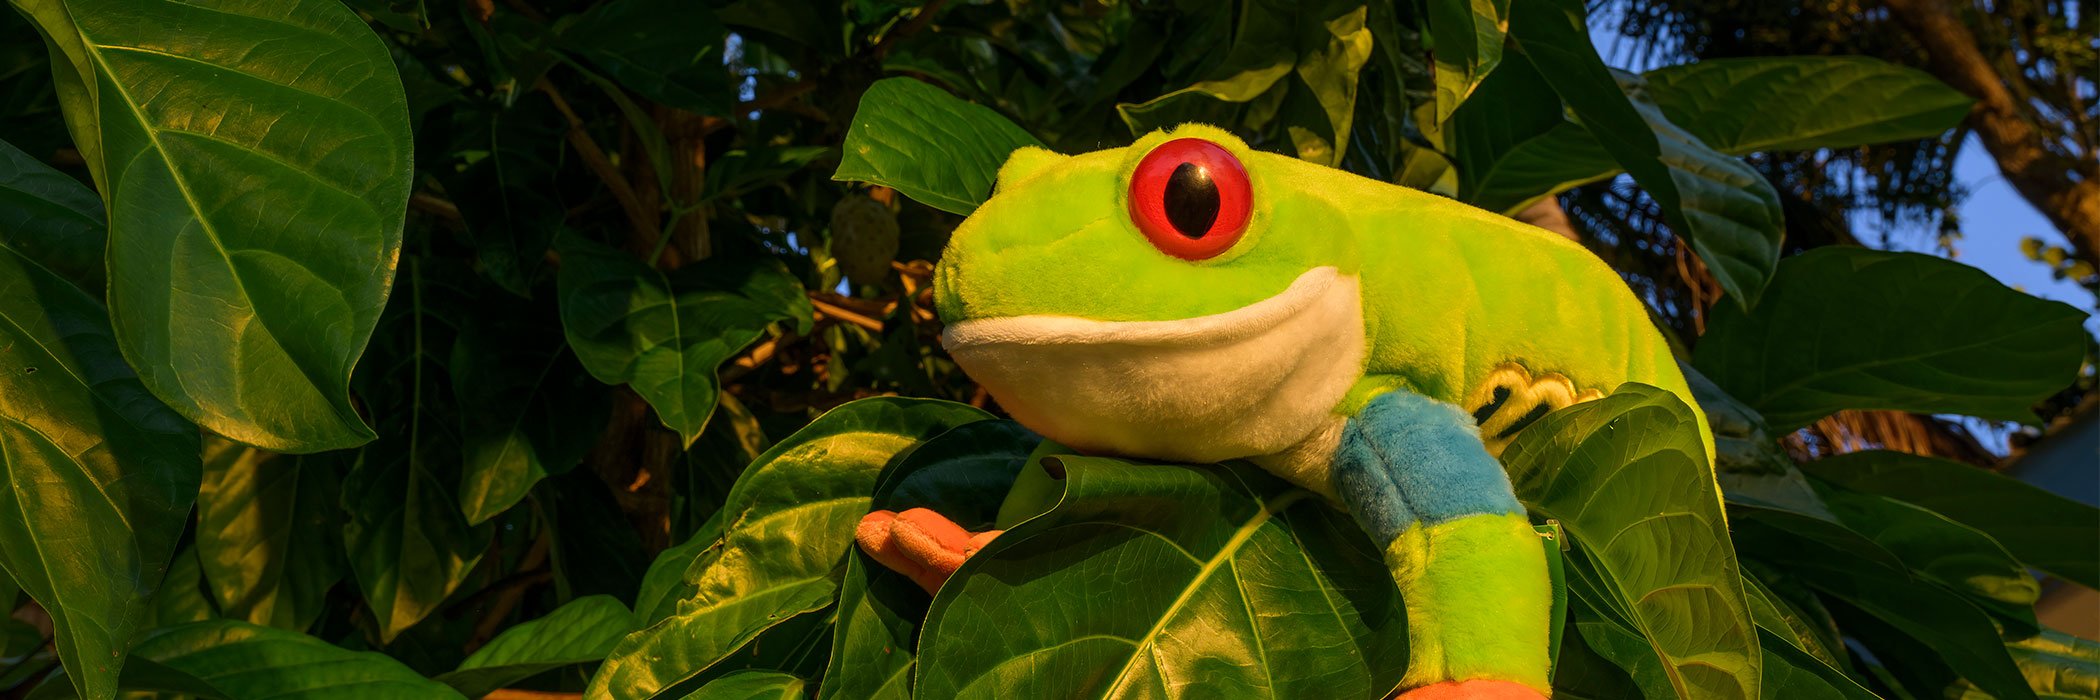 red-eyed frog plush